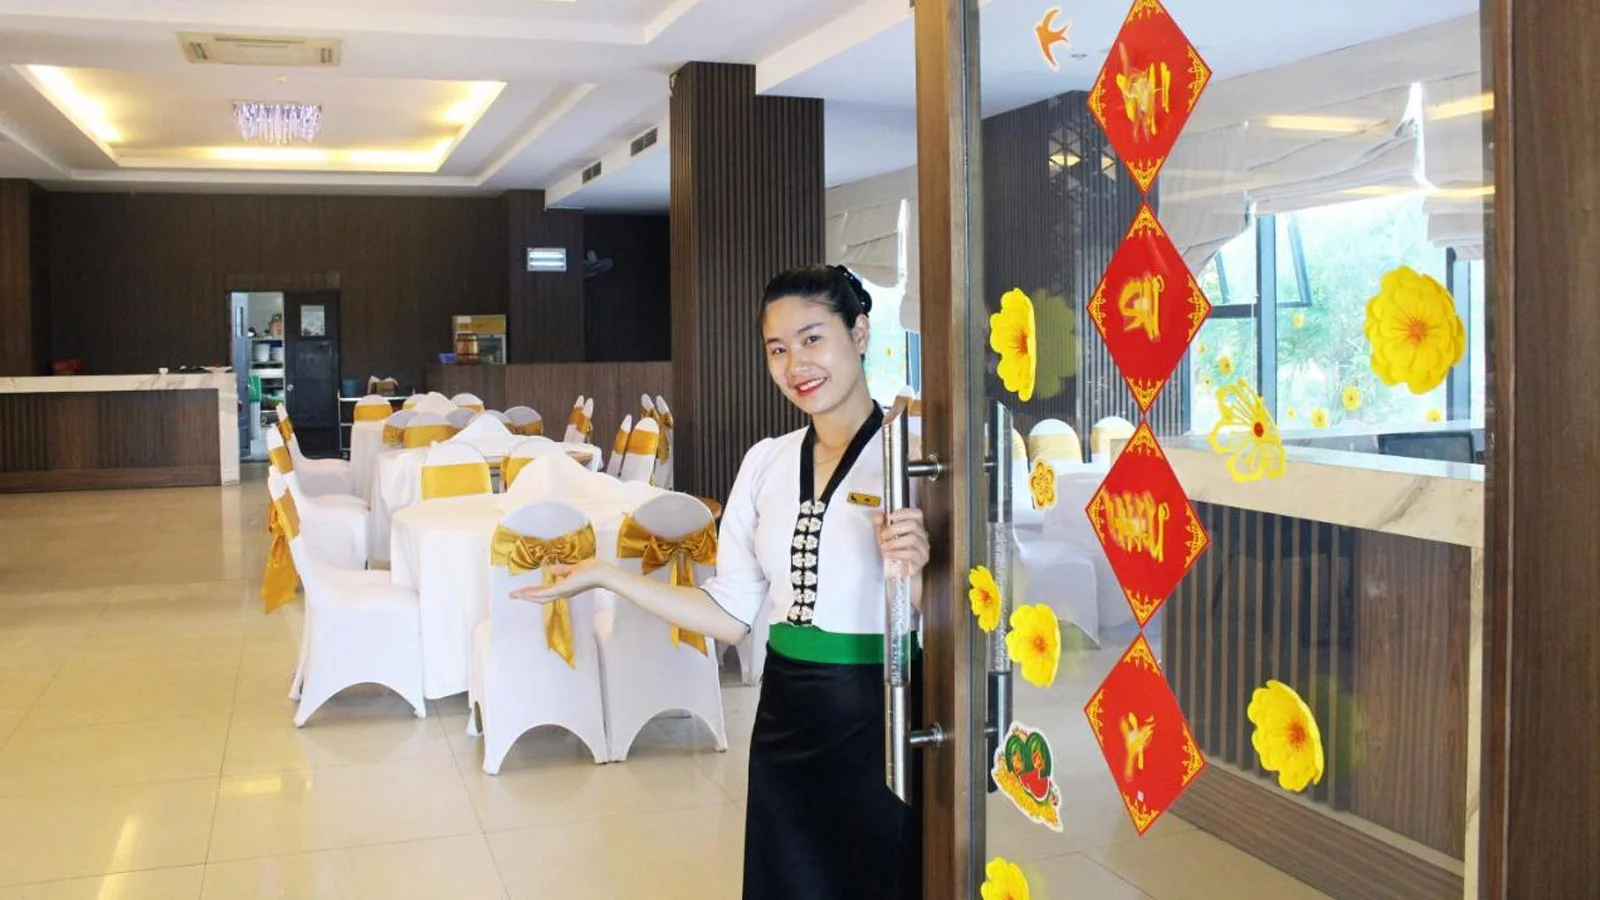 Khách sạn Mường Thanh Quy Nhơn